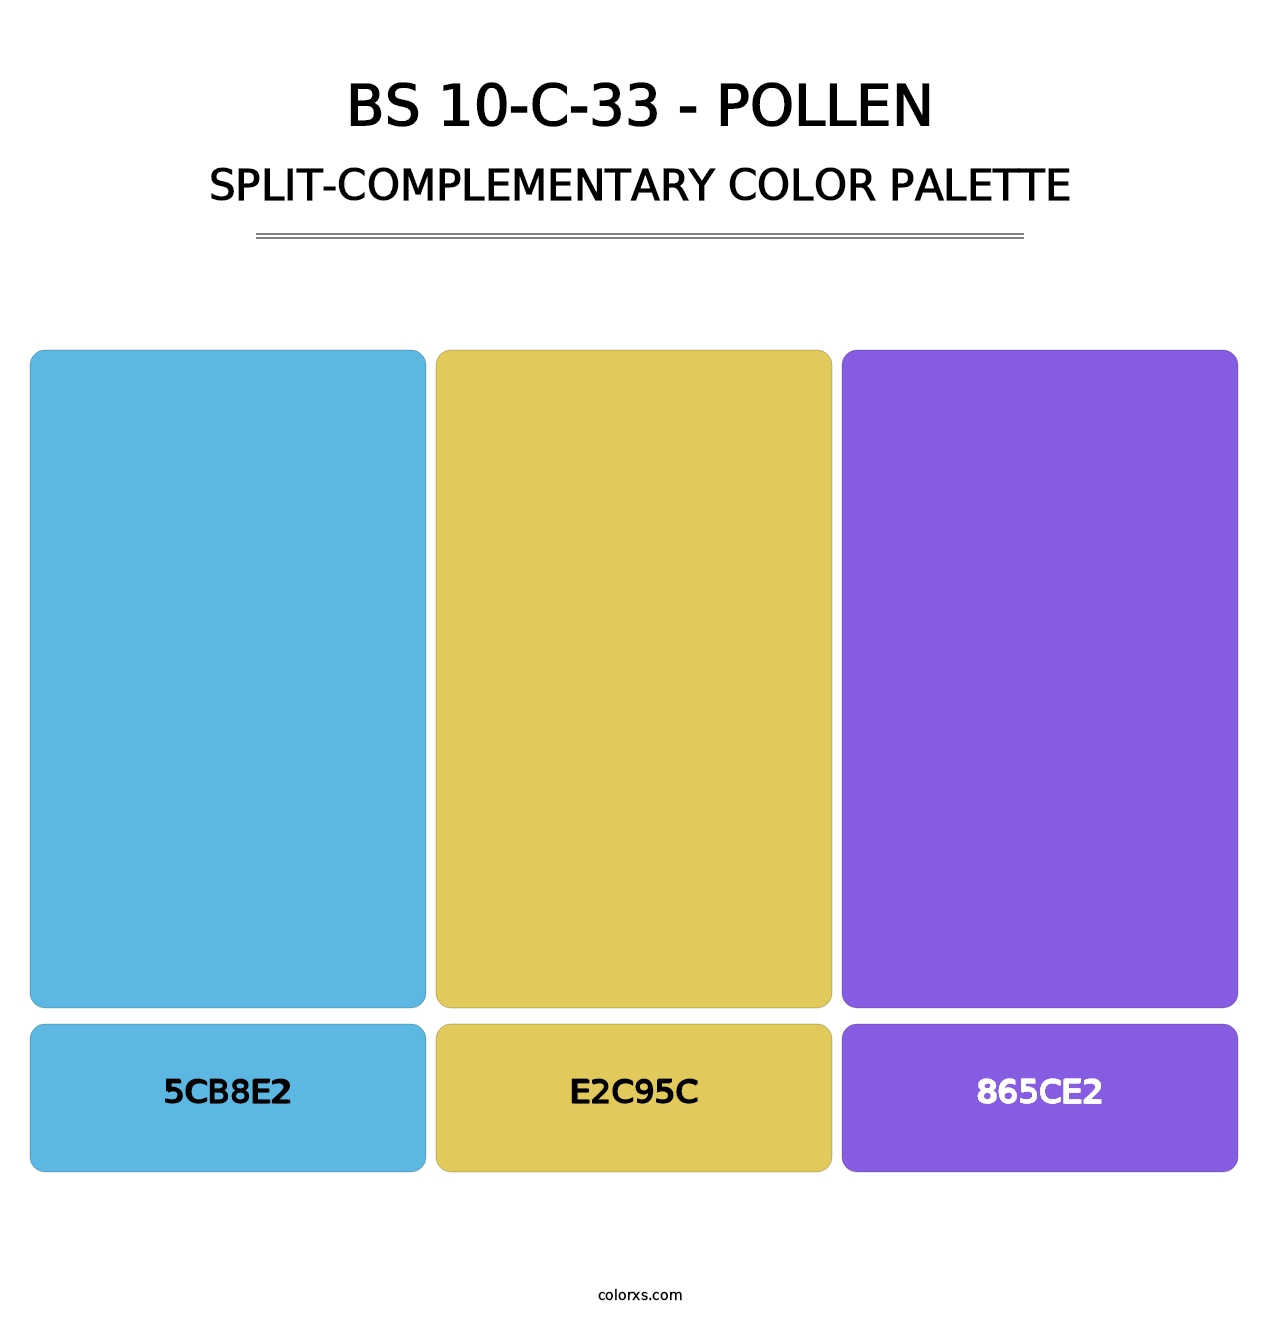 BS 10-C-33 - Pollen - Split-Complementary Color Palette